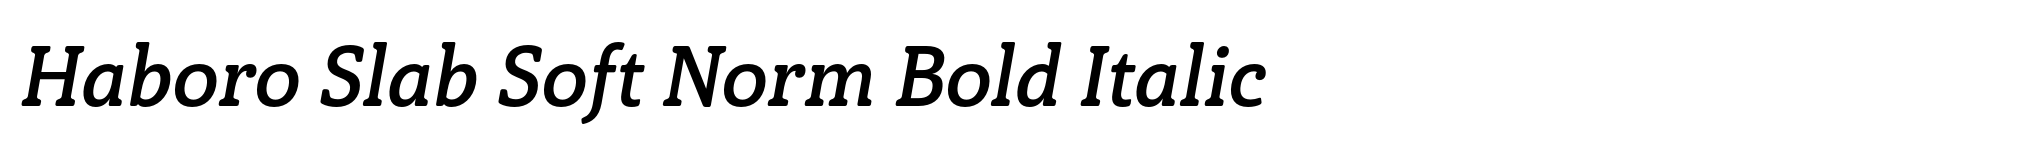 Haboro Slab Soft Norm Bold Italic image